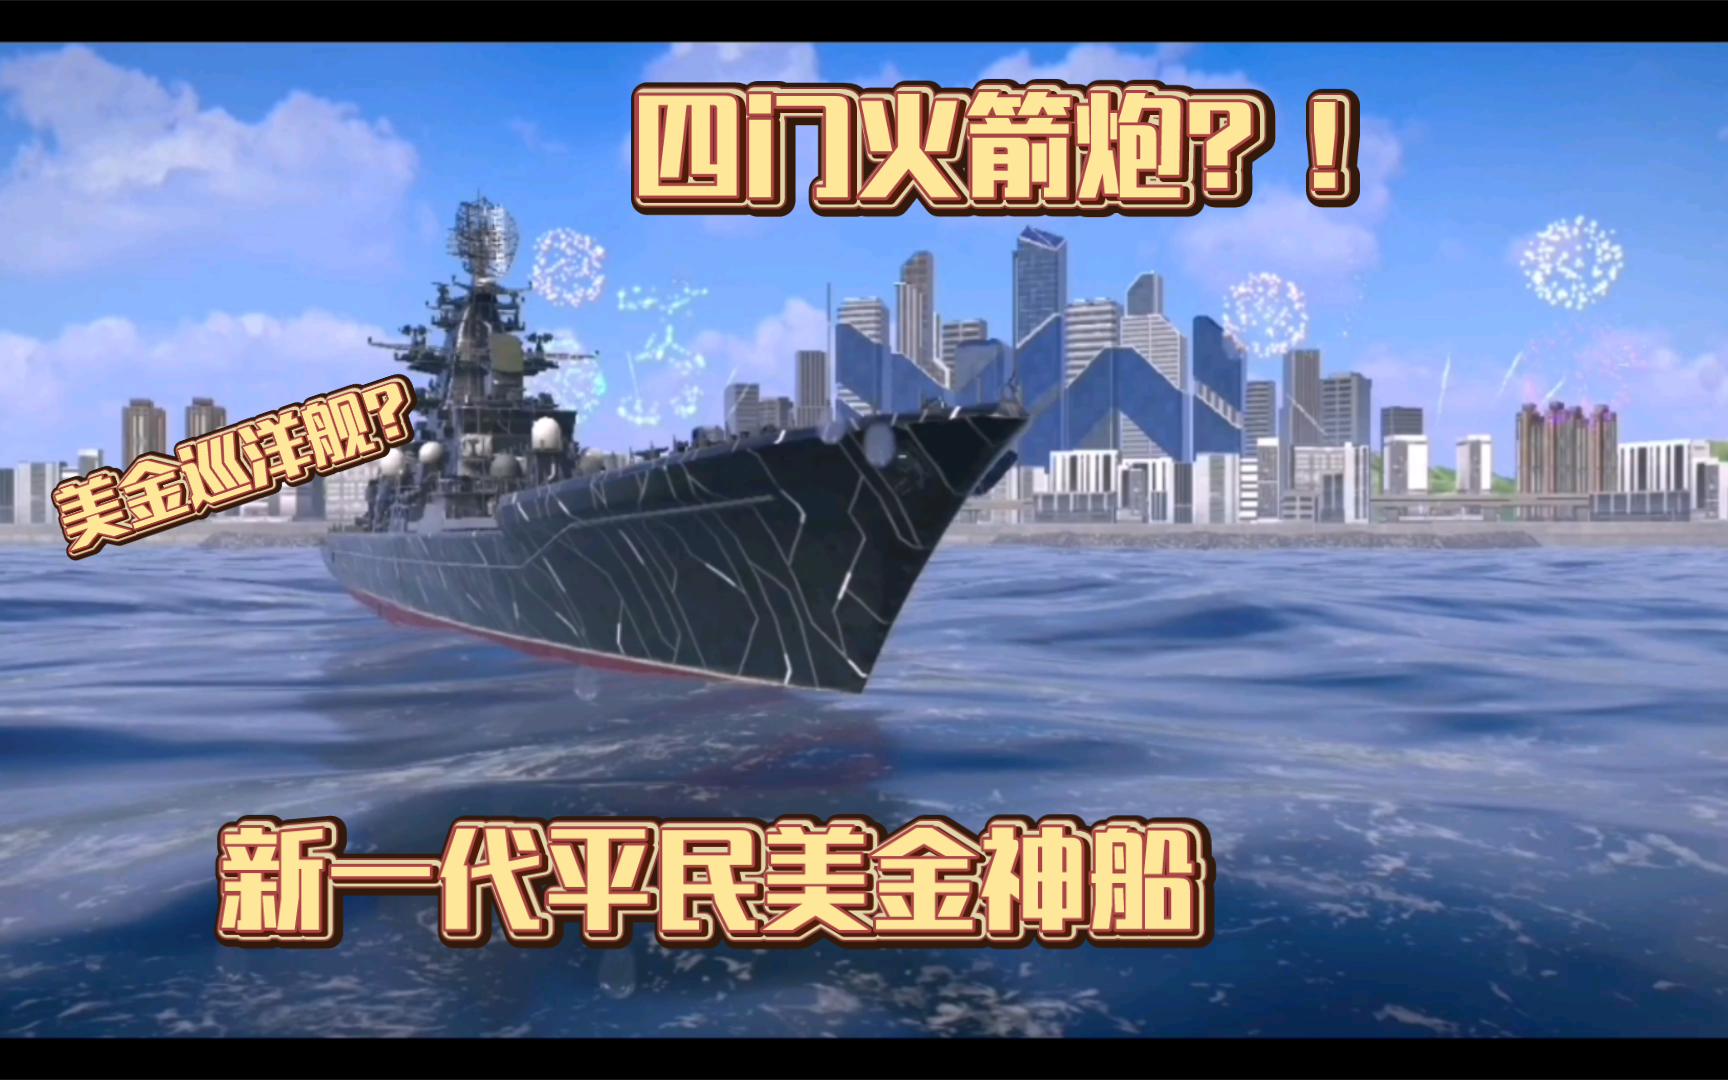 新的平民神船——纳西莫夫海军上将号巡洋舰！